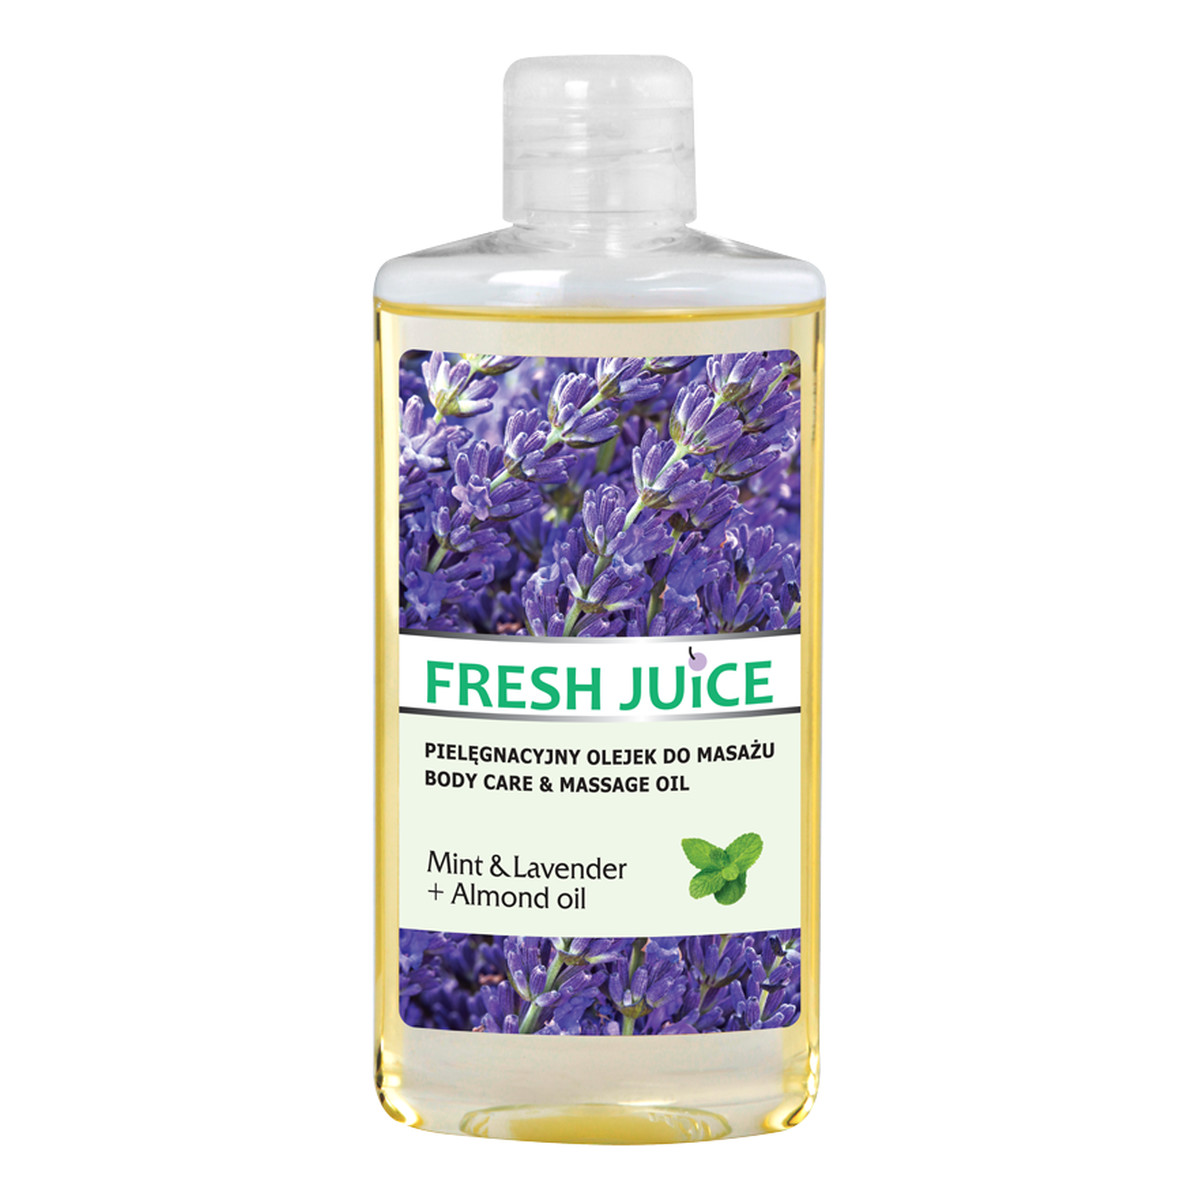 Fresh Juice Mint & Lavender + Almond Oil pielęgnacyjny olejek do masażu 150ml